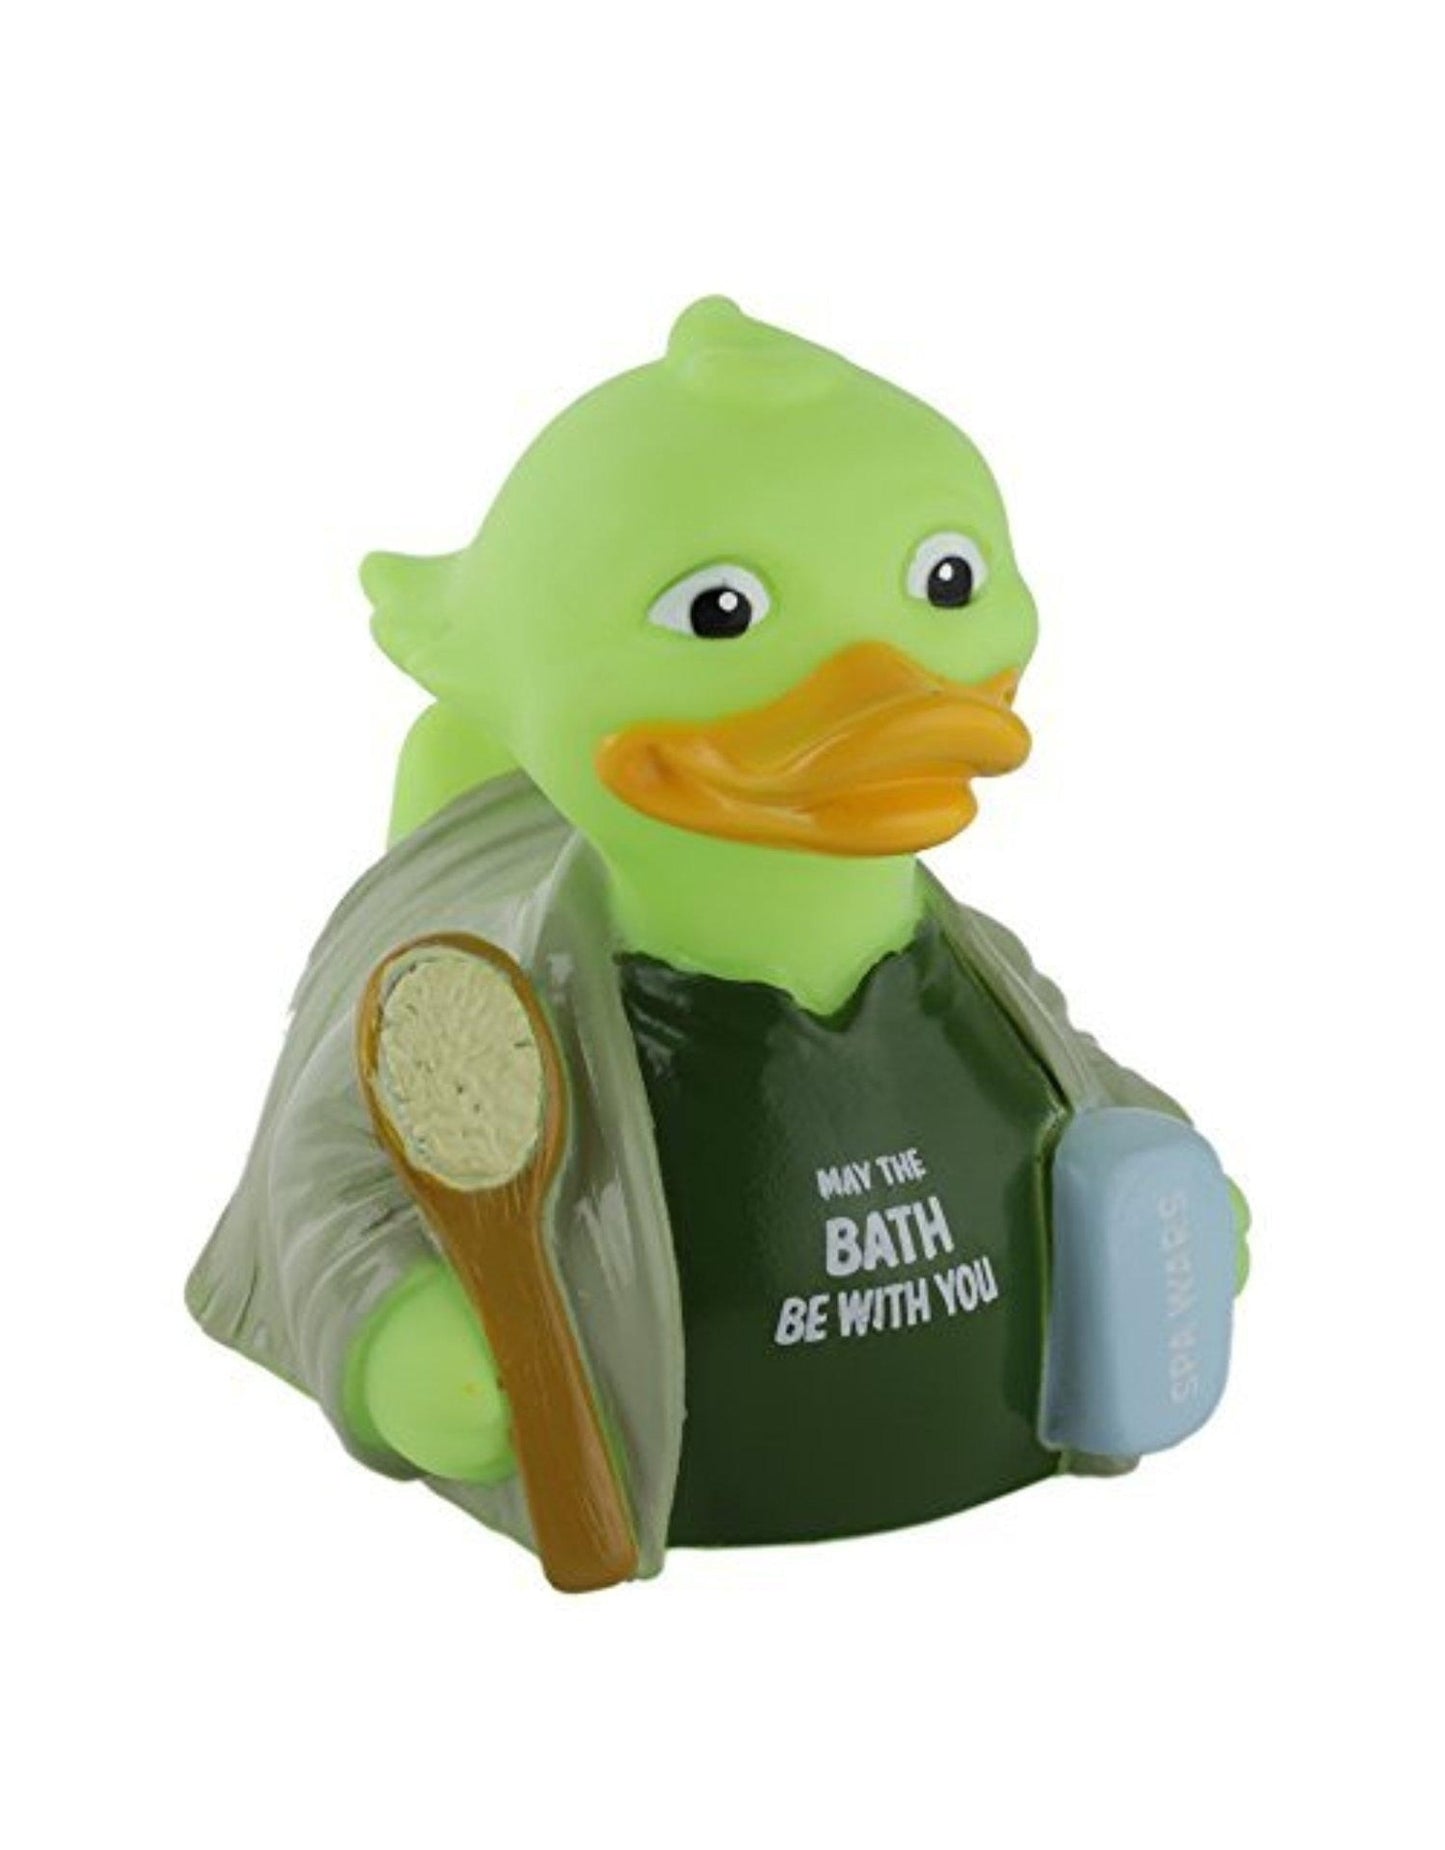 Yoda "Spa Wars" Rubber Duck